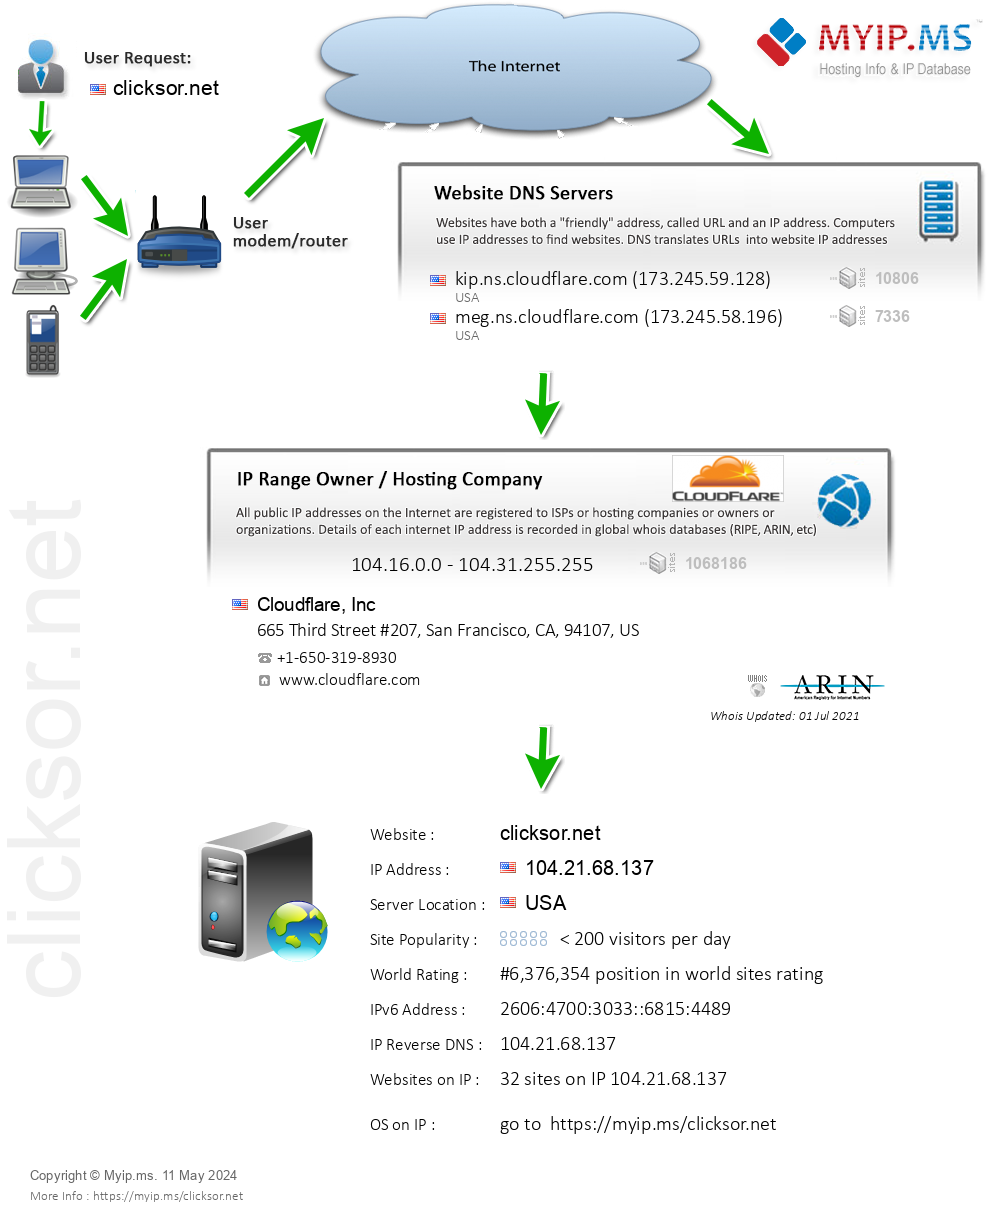 Clicksor.net - Website Hosting Visual IP Diagram